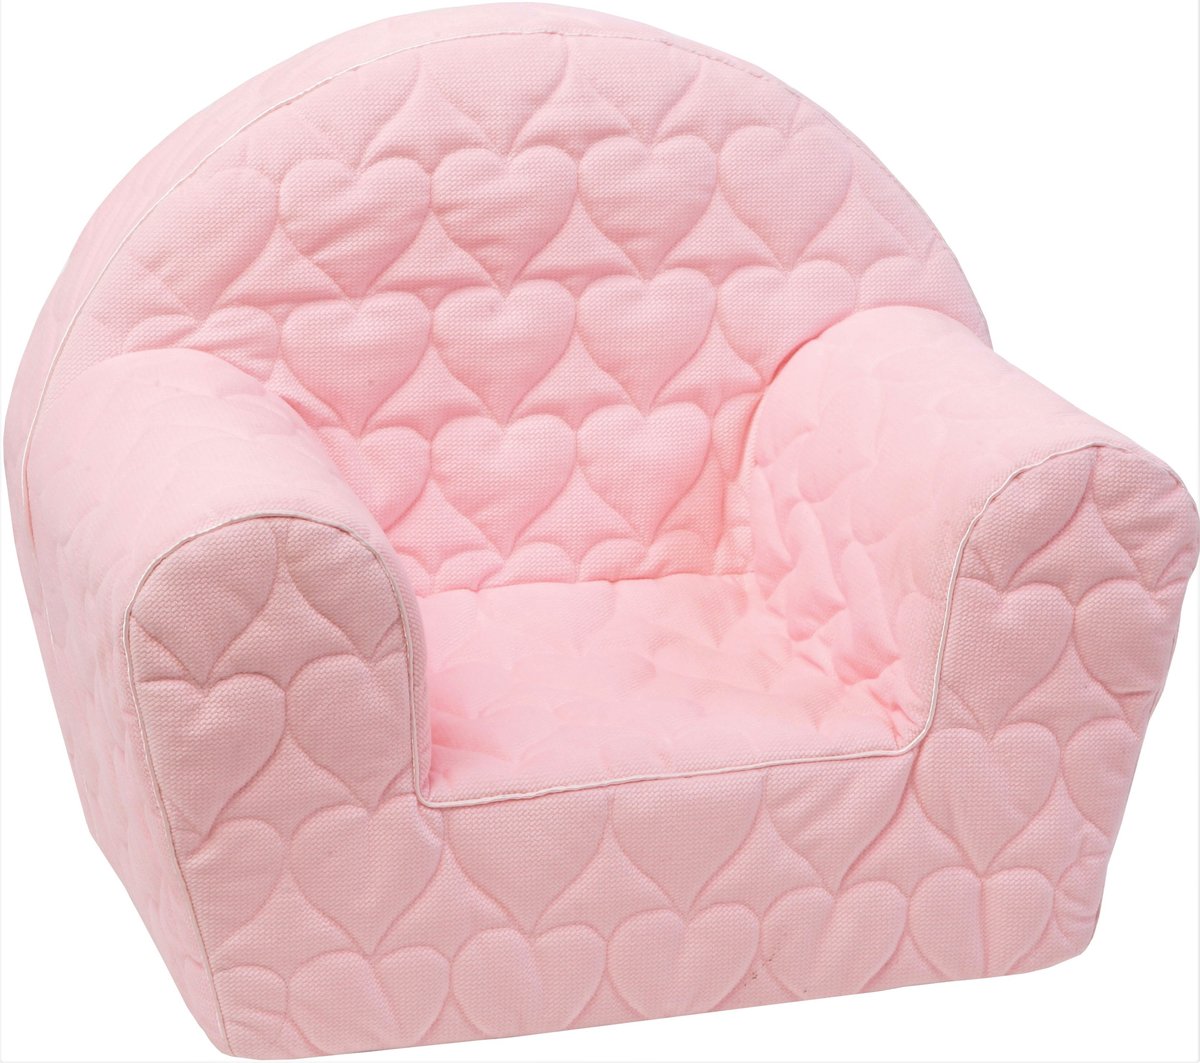 Delsit- Fotel Pikowany Różowy, Pufa Krzesełko Fotelik Z Pianki Dla Dziecka